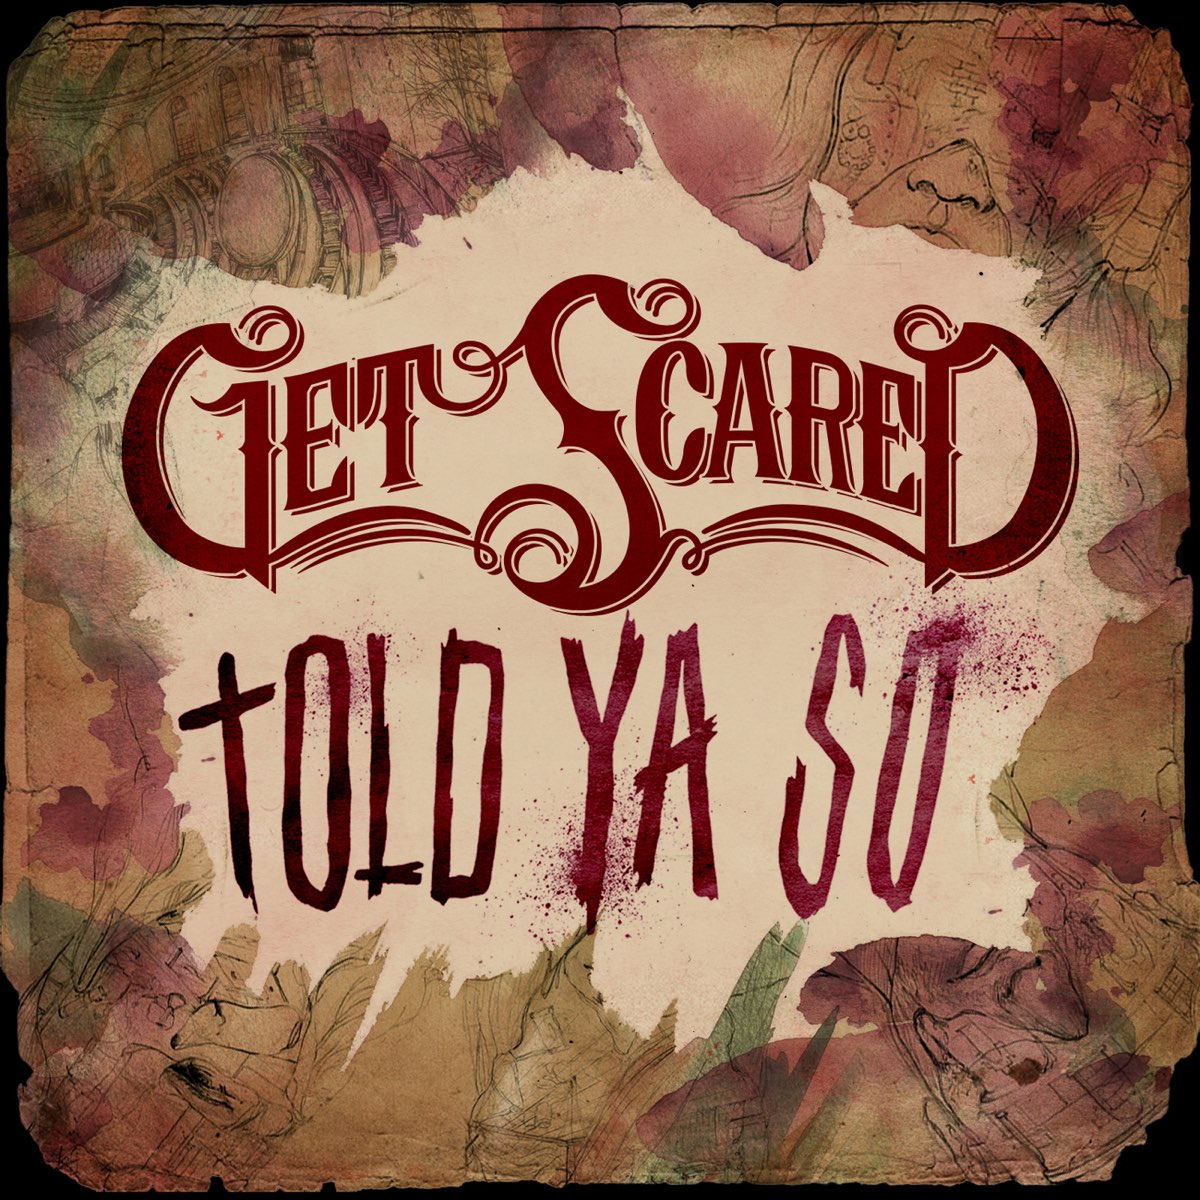 Get scared sarcasm. Get scared альбомы. Get scared обложка. Джоэл Фавьер get scared. Постер get scared.